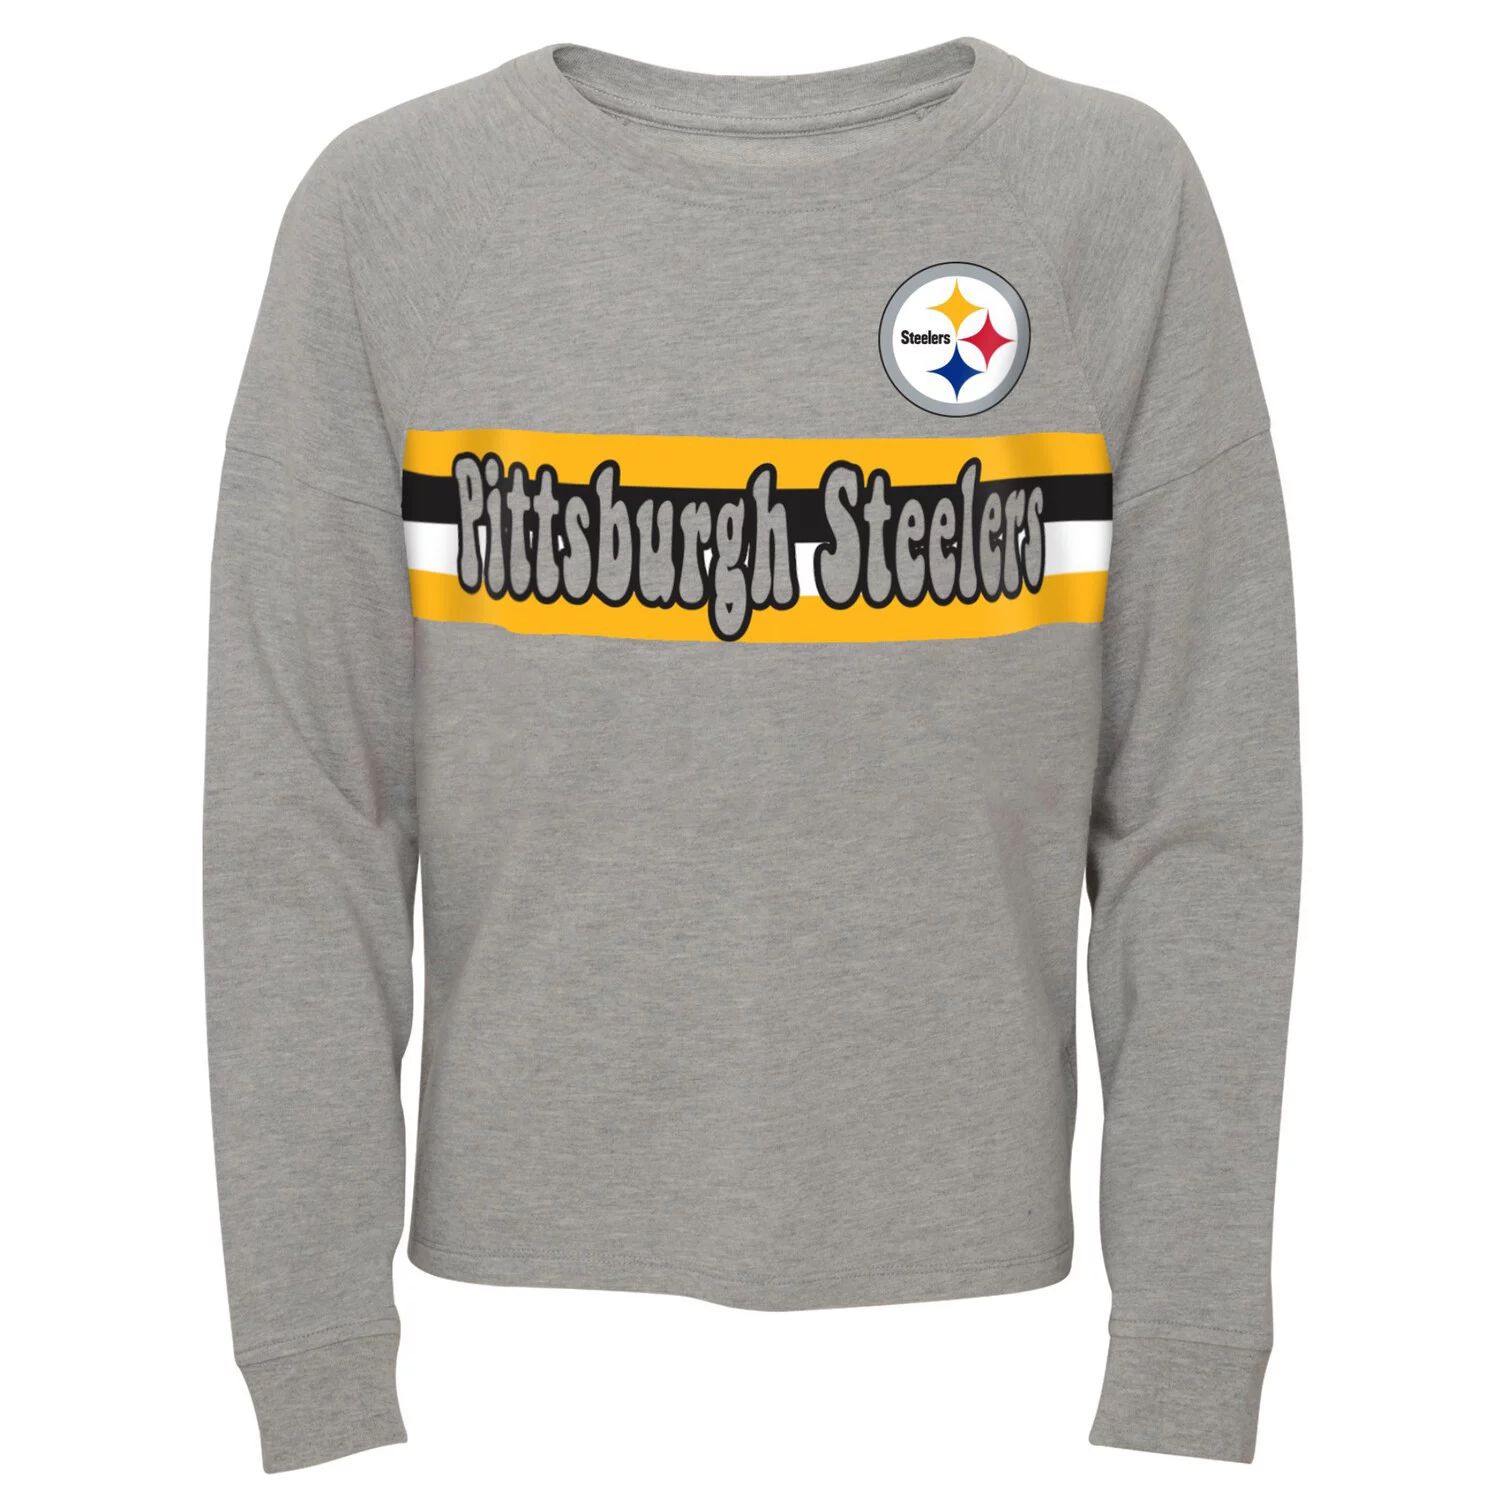 Серая футболка с длинными рукавами и полосками реглан для юниоров Pittsburgh Steelers Outerstuff